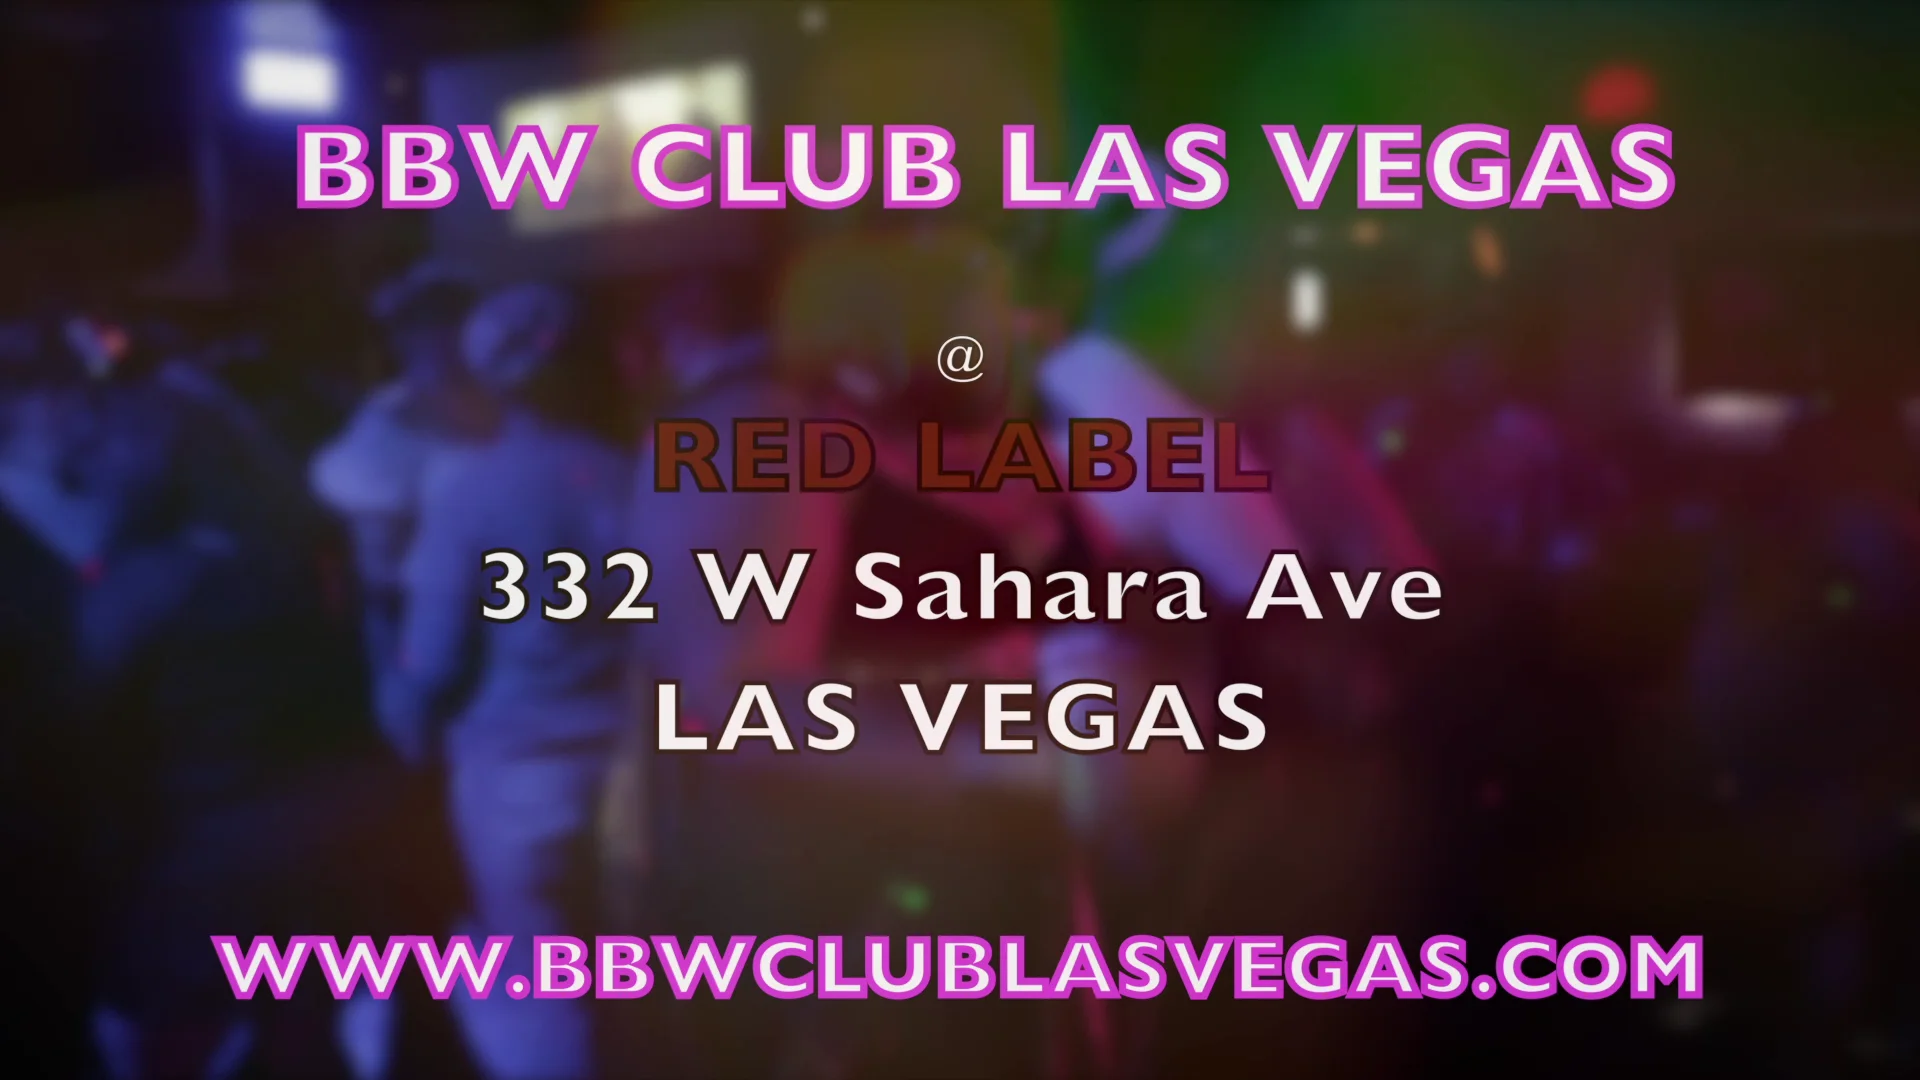 divina tadeo recommends Bbw Club Las Vegas